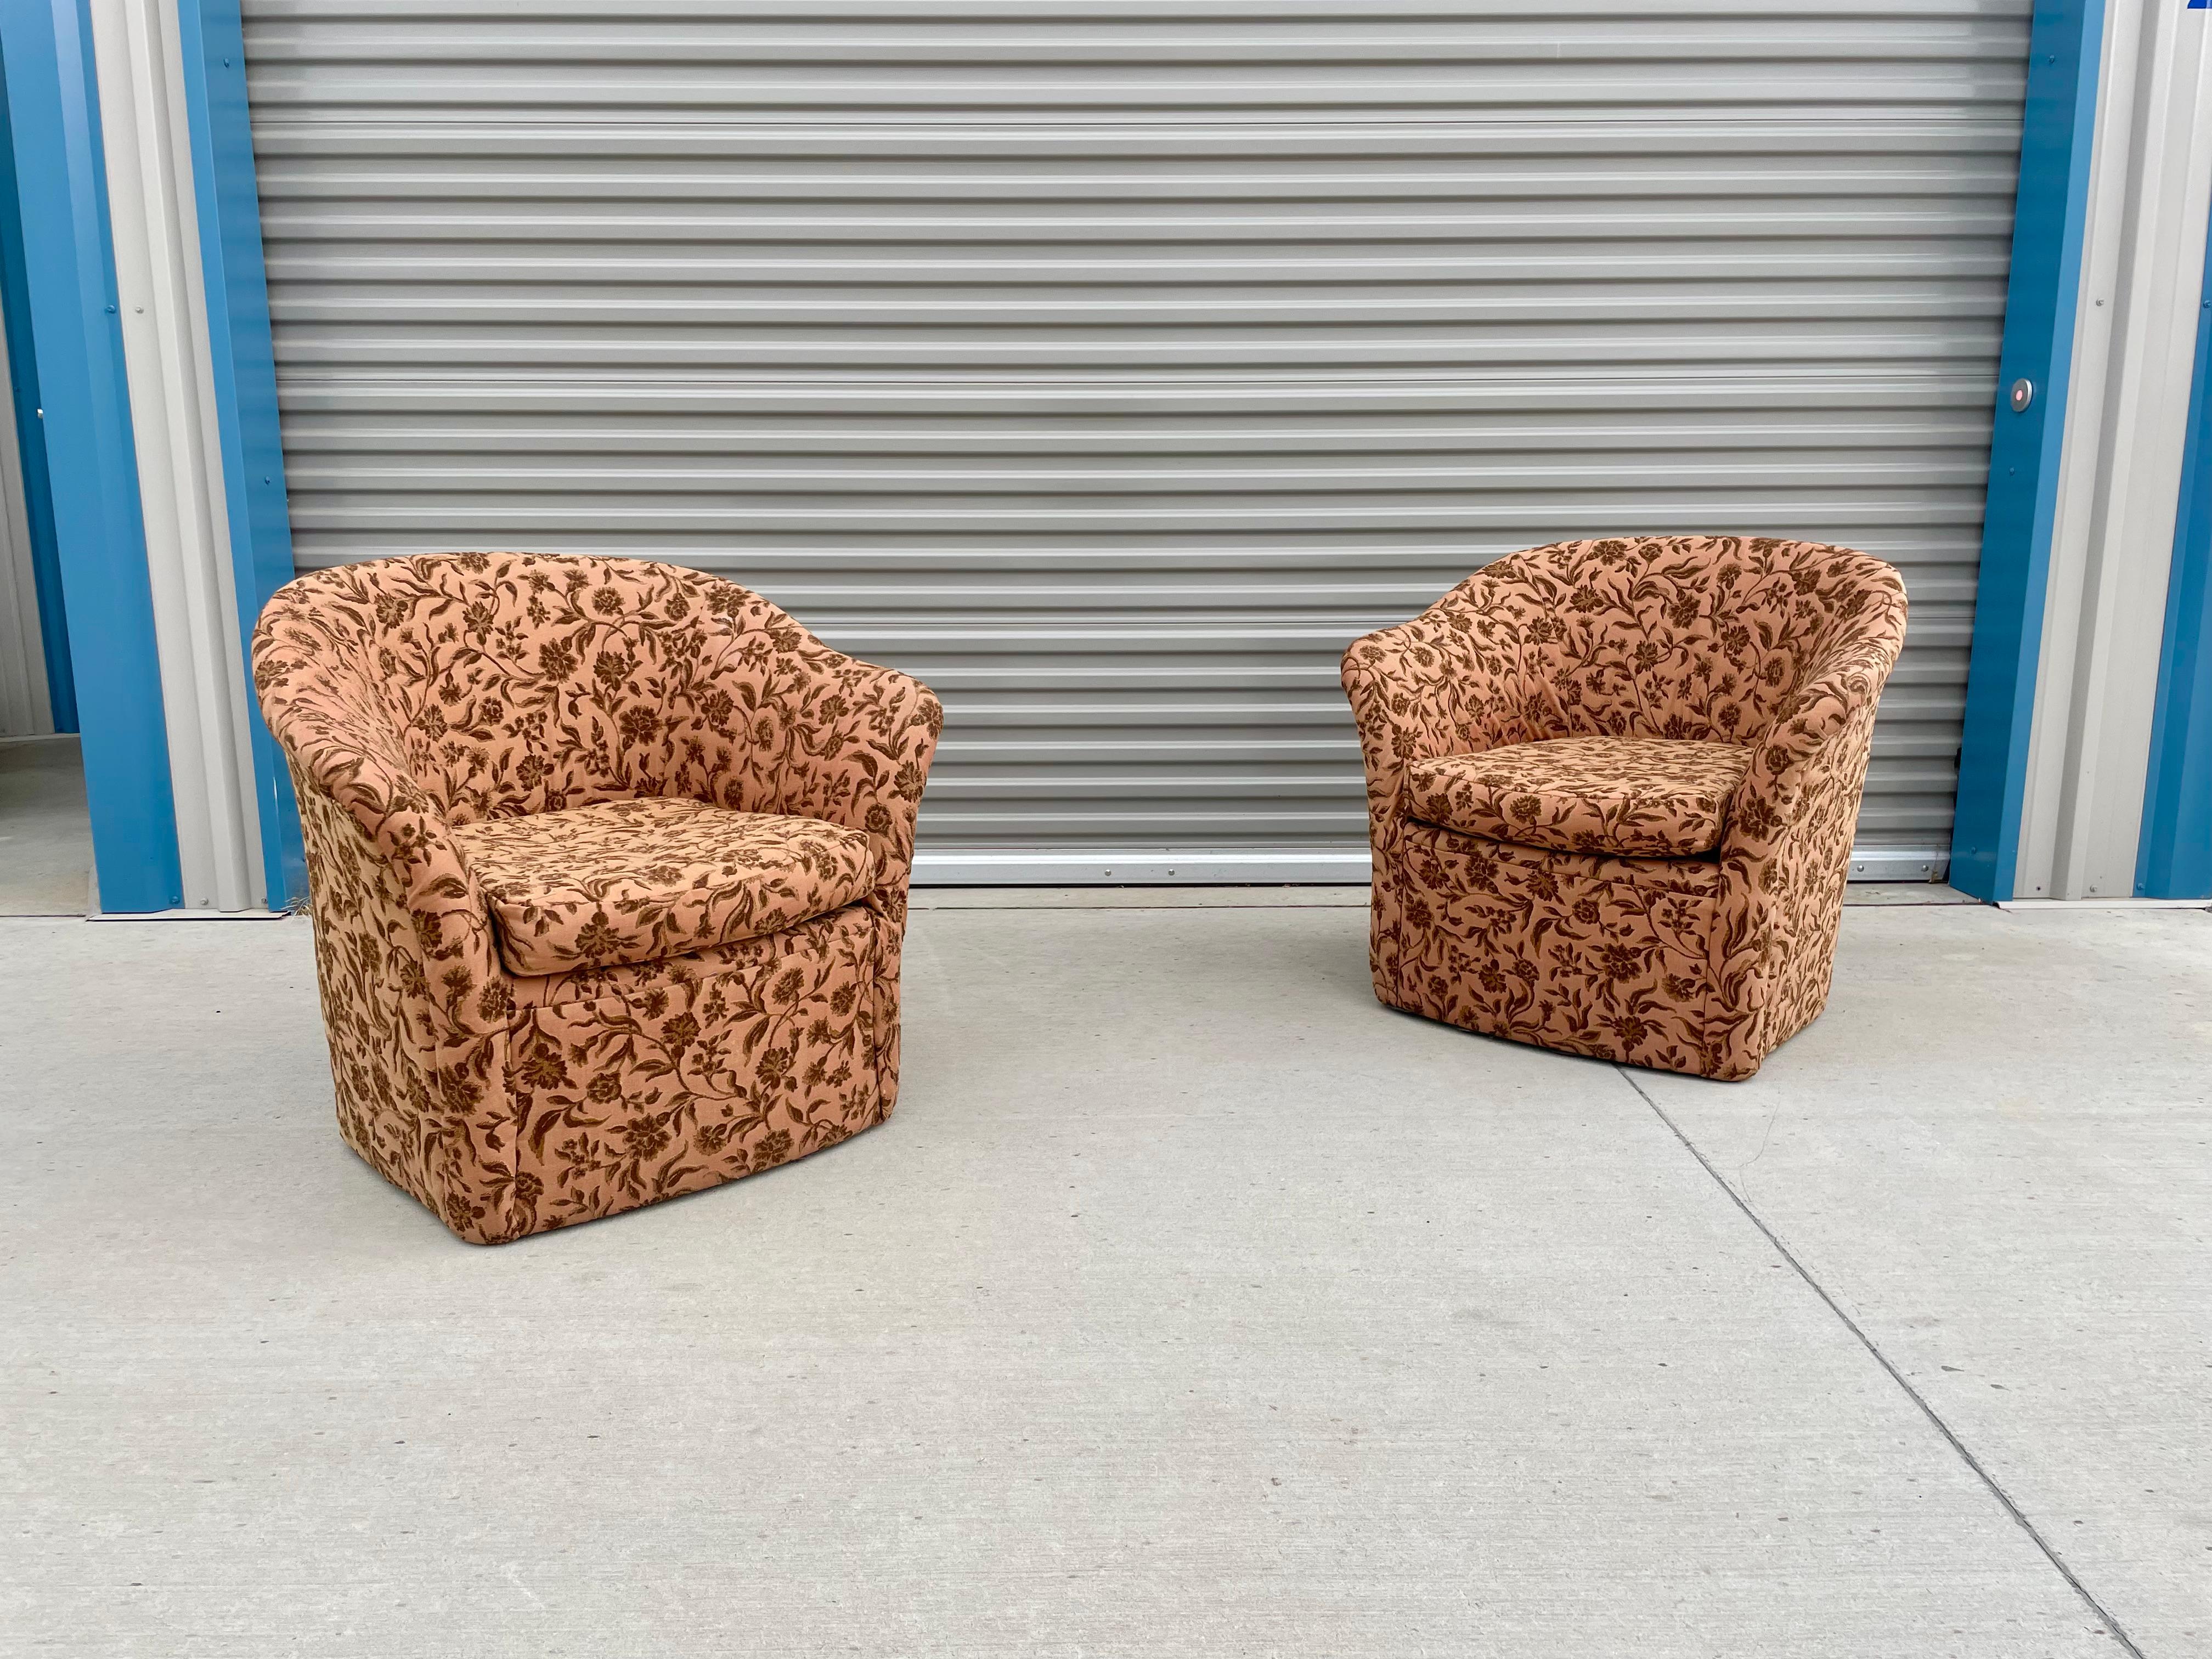 Magnifiques chaises longues modernes du milieu du siècle dernier, conçues et fabriquées aux États-Unis vers les années 1970. Ces chaises sont dotées d'un joli rembourrage de style fleuri qui leur confère un style vintage tout en les rendant